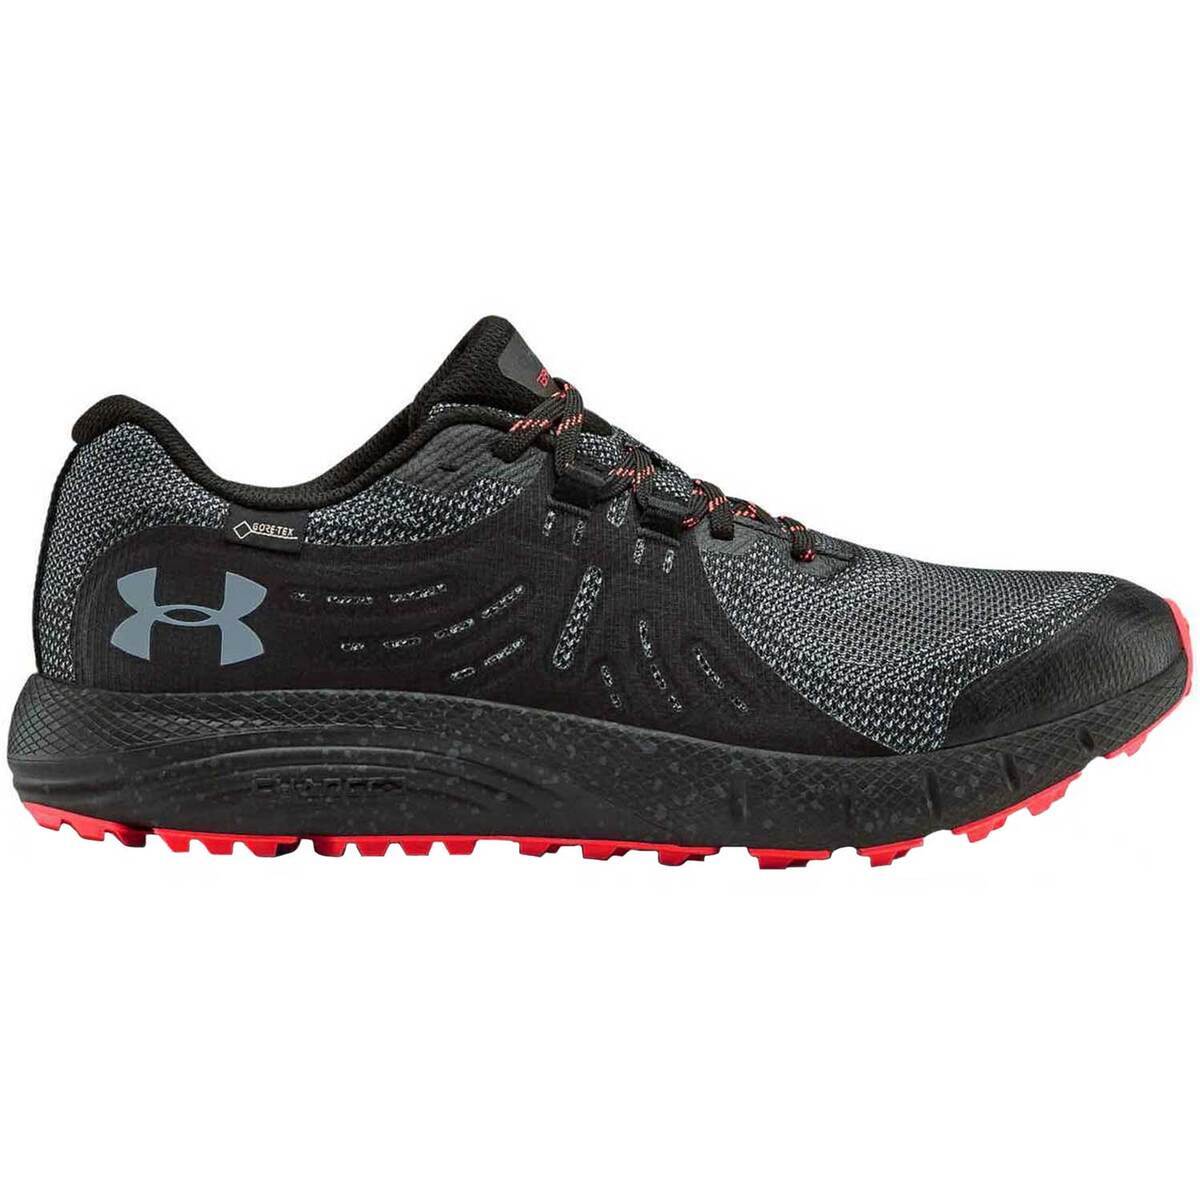 https://www.sportsmans.com/medias/under-armour-mens-charged-bandit-waterproof-trail-running-shoes-black-size-8-1521996-1.jpg?context=bWFzdGVyfGltYWdlc3w5OTUzMXxpbWFnZS9qcGVnfGFEWm1MMmd4WWk4eE1URXdOekE0TWpBM05qRTVNQzh4TlRJeE9UazJMVEZmWW1GelpTMWpiMjUyWlhKemFXOXVSbTl5YldGMFh6RXlNREF0WTI5dWRtVnljMmx2YmtadmNtMWhkQXw5MjAzNjE3NWQzYmRjMzQzOTY3NDEzNmI3Mjc5NzAyNTZlZDc4MzY0YjIzYjU2YjA5ZmNhNmQzNjIwNzQzZjFl